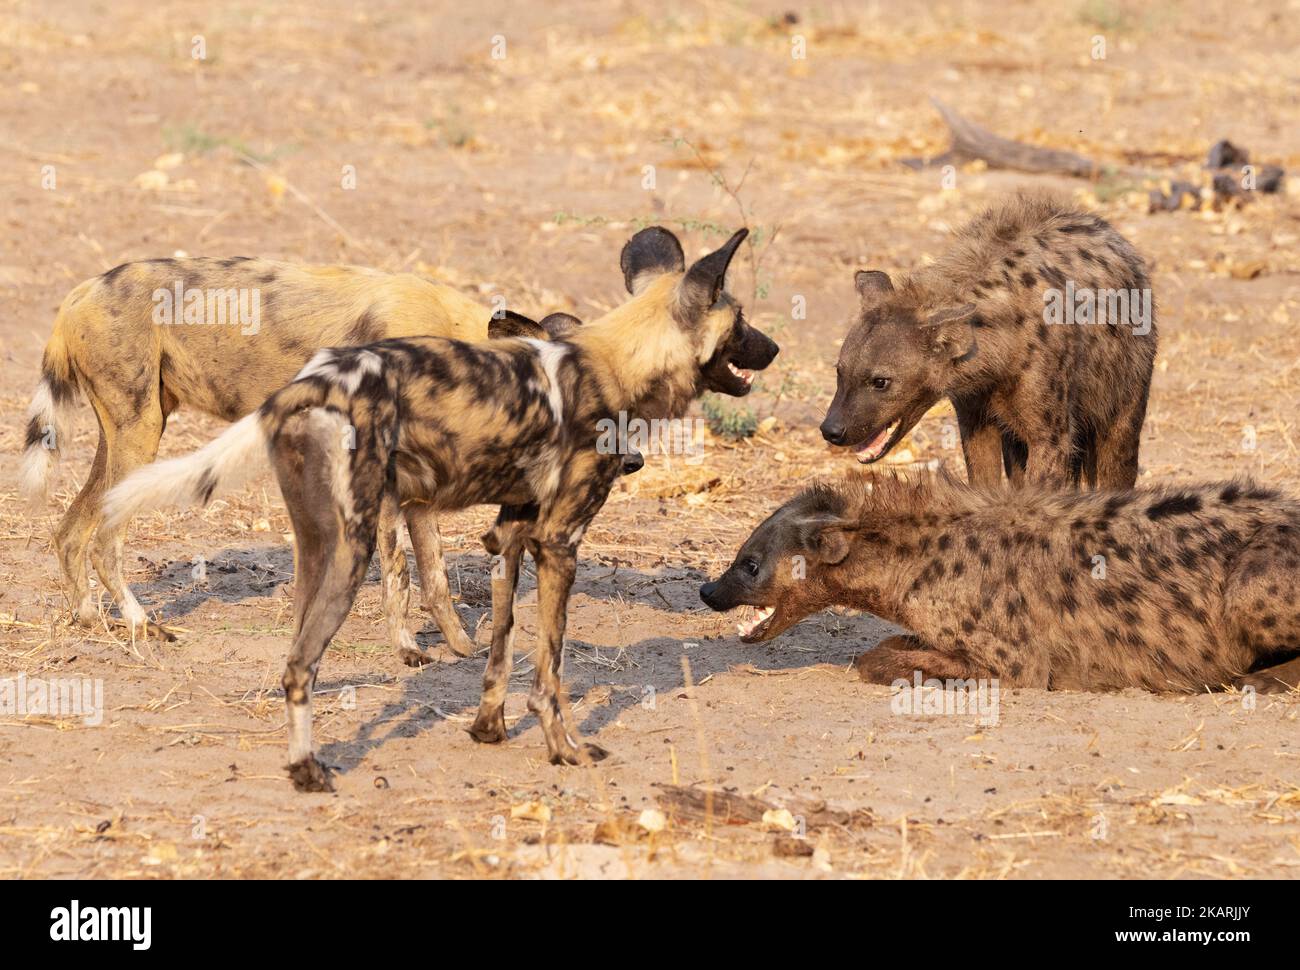 Deux chiens sauvages africains et deux hyènes tachetées, Moremi Game Reserve, delta d'Okavango, Botswana Afrique. Afrique faune. Banque D'Images